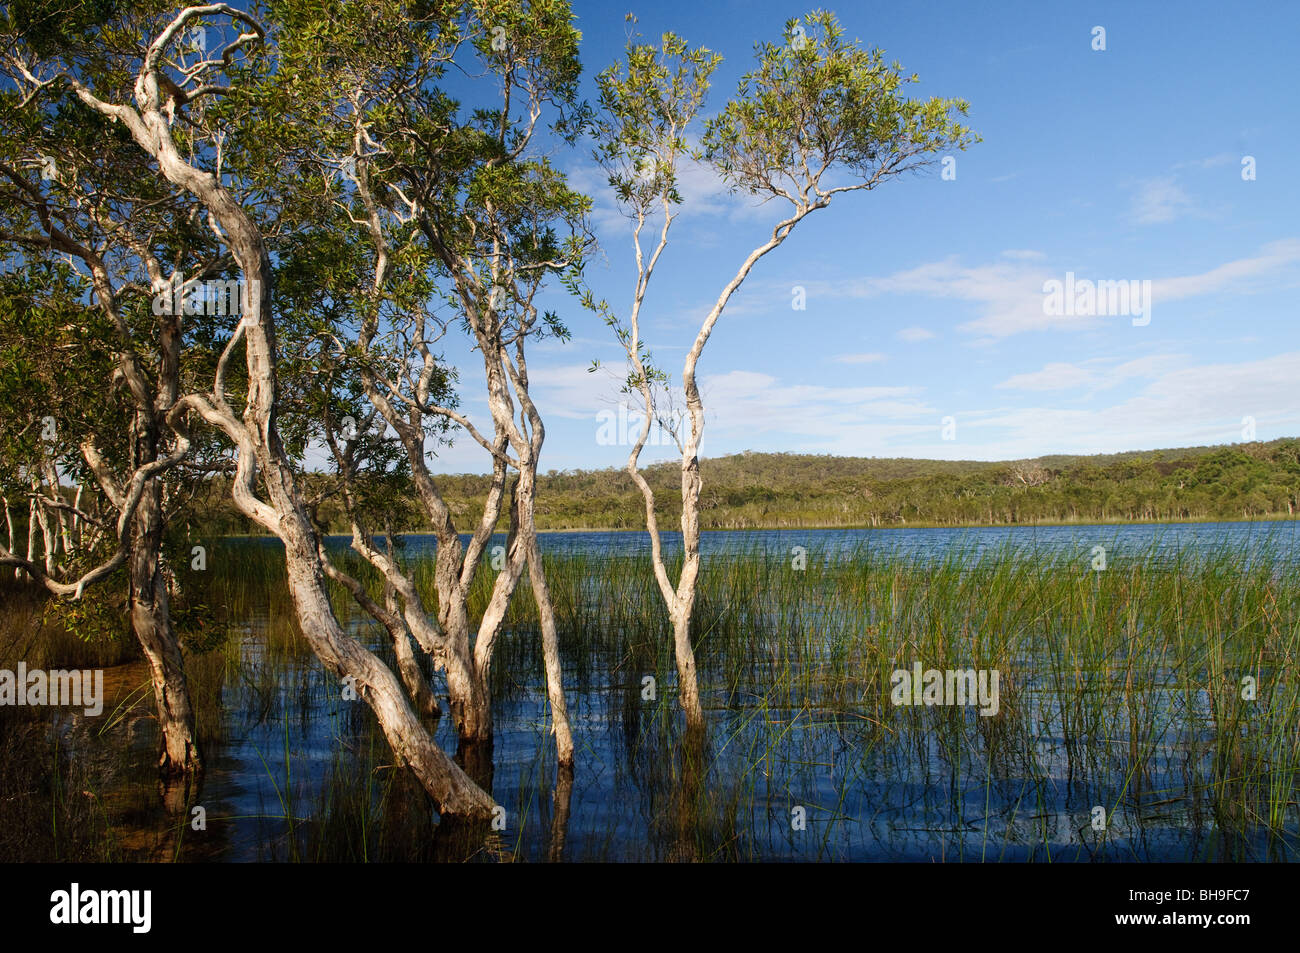 NORTH Stradbroke Island, Australie - Brown Lake est un lac du Nord sur Stradbroke Island, dans le Queensland, Australie. Connu comme un lac, comme d'autres lacs perchés sur les îles sablonneuses de la région du sud-est de Queensland il conserve son eau en raison d'une couche de feuilles qui tapissent le fond du lac.[1] Cela est particulièrement apparent dans le lac Brown que le tanin est exsudée par les feuilles, tombé de entourant Paperbark Melaleuca et Ti-arbres Callistemon, les taches à l'eau une couleur brun riche n'est pas sans ressembler à celle de thé. North Stradbroke Island, juste à côté de l'État du Queensland, capitale de Brisbane, est le monde" Banque D'Images